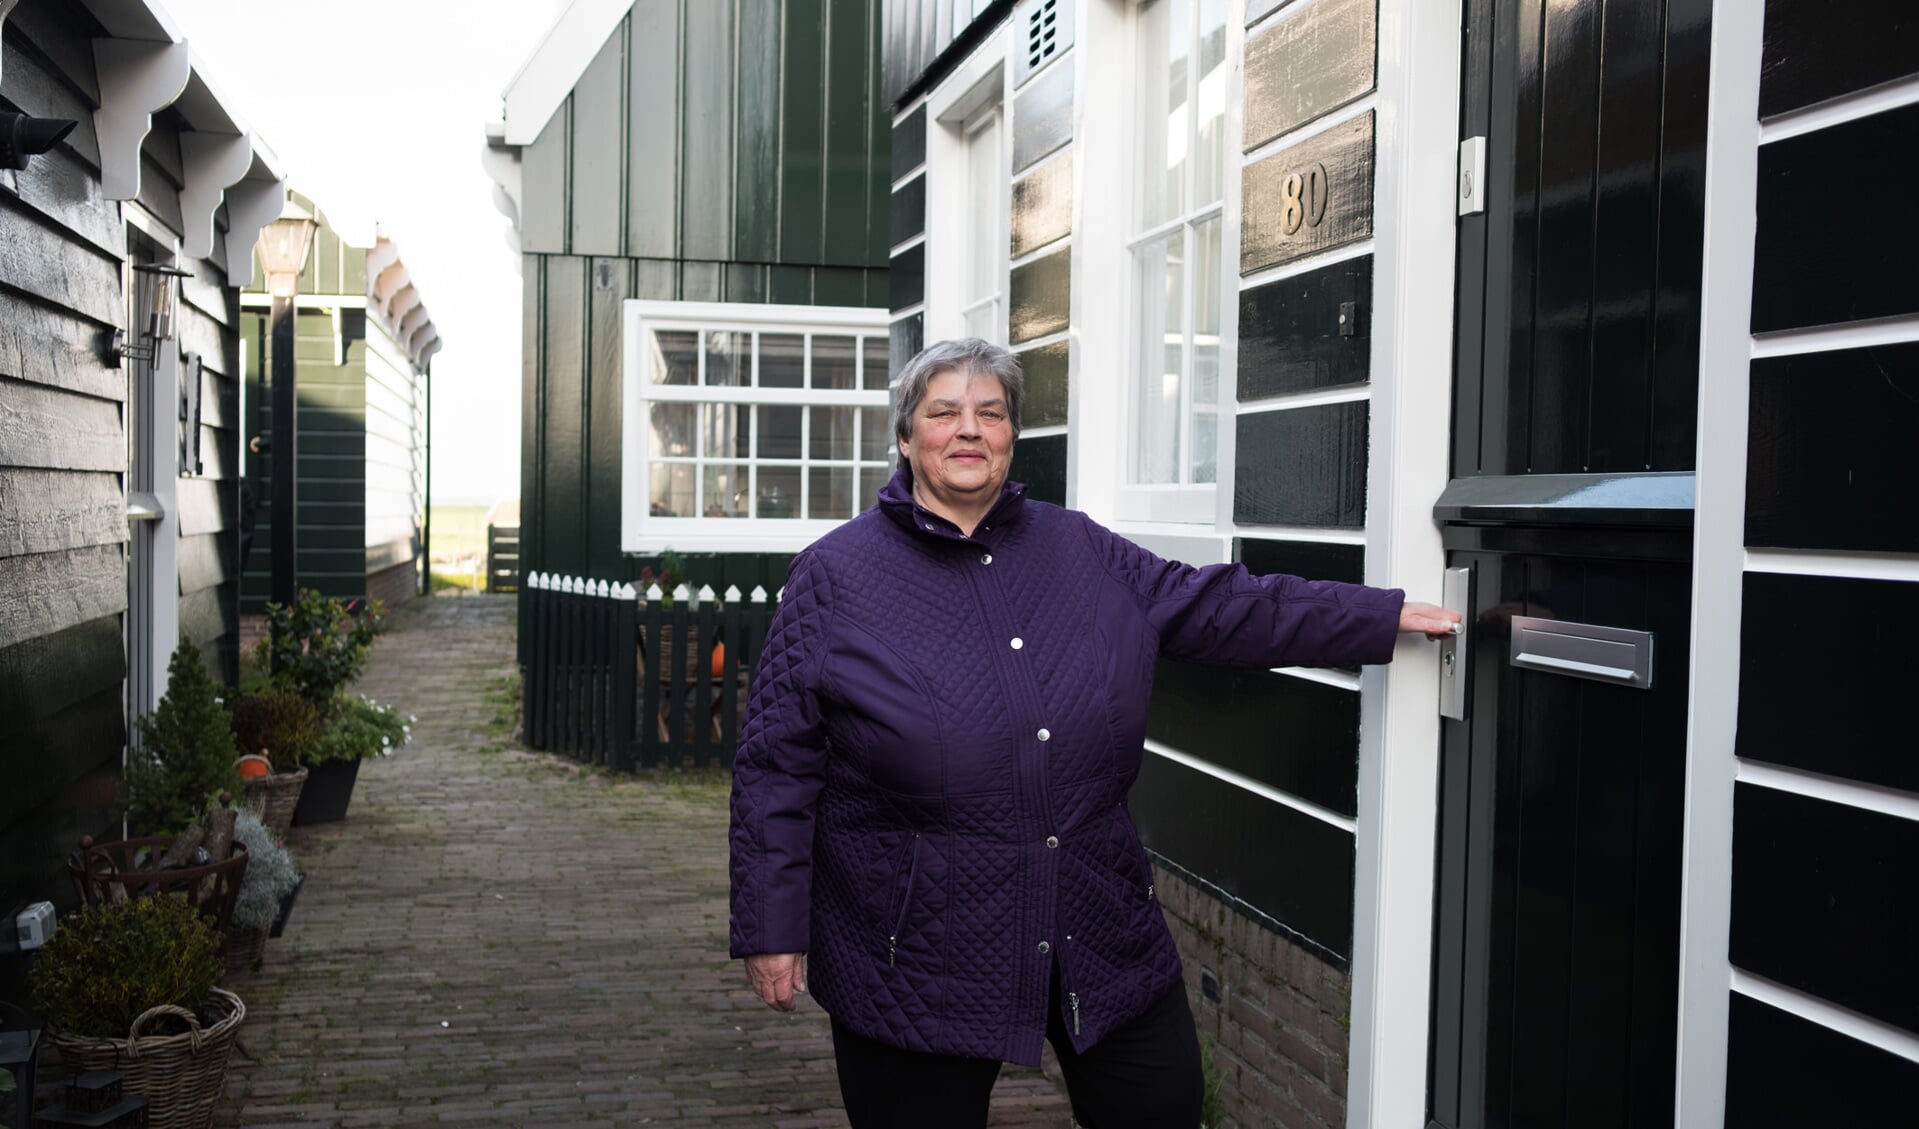 Mevrouw Lobbrig-Zeeman is blij met de nieuwe verflaag van haar woning op Marken. 